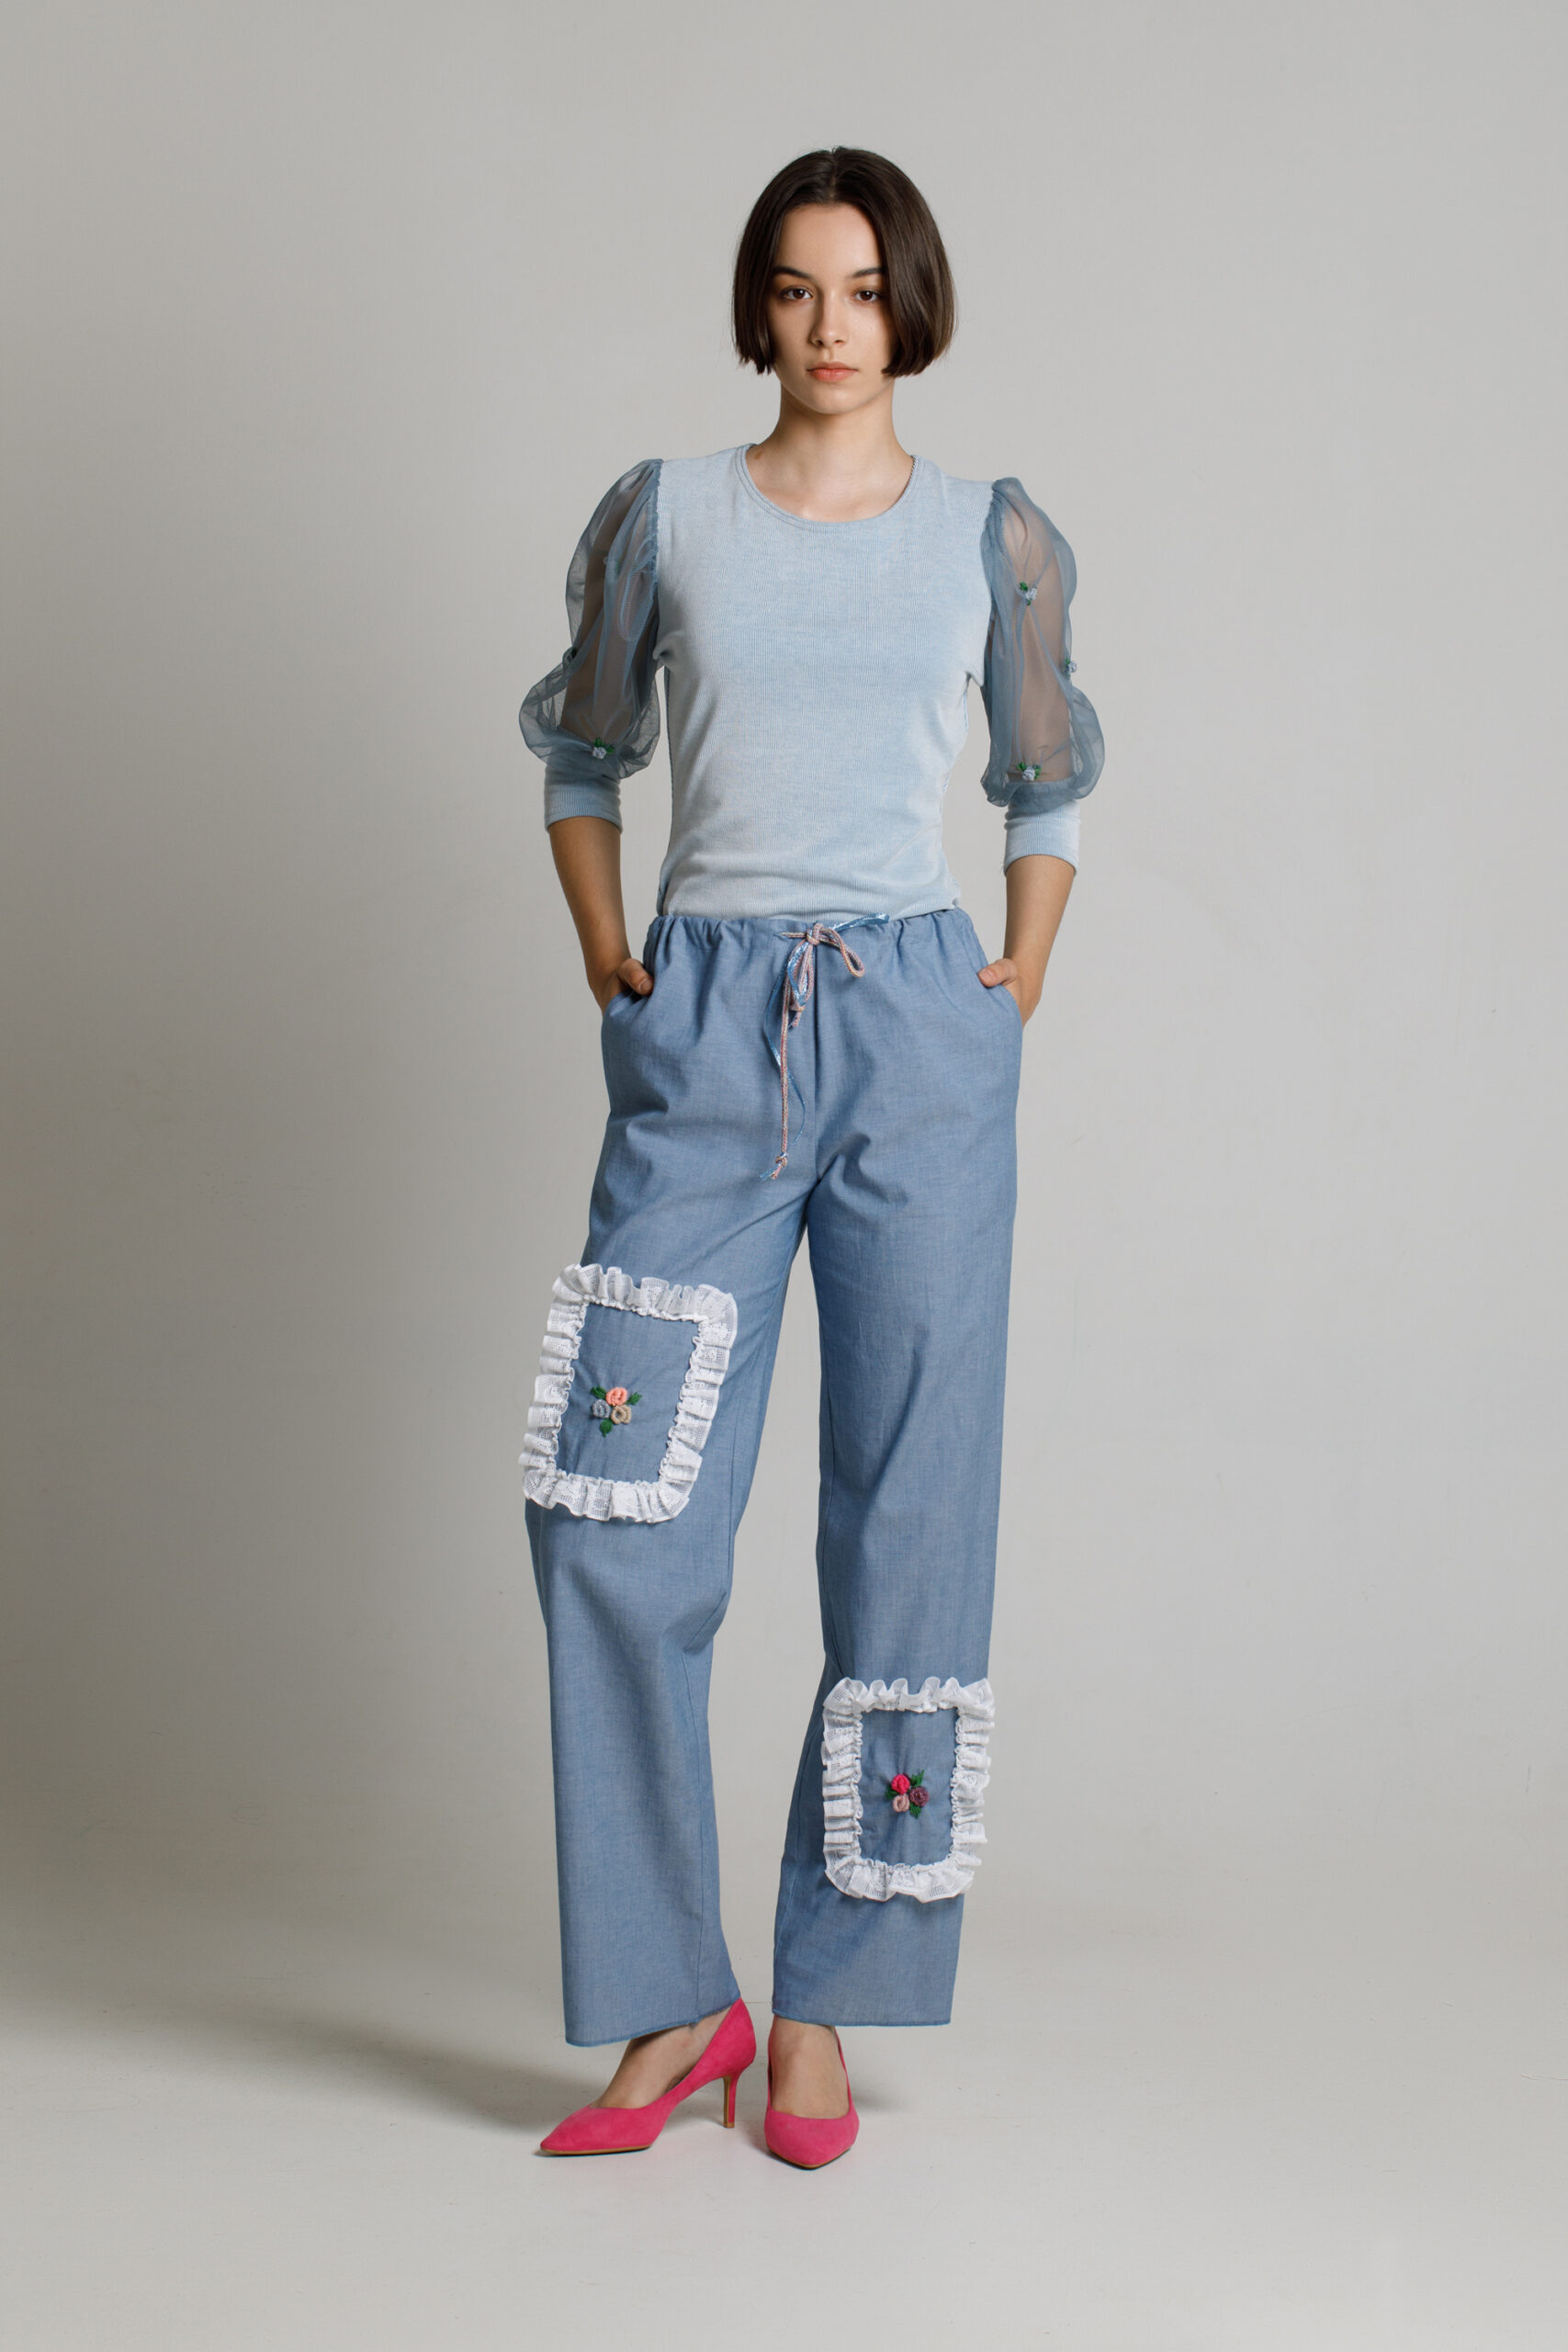 Pantalon CIELO casual din blug cu dantela. Materiale naturale, design unicat, cu broderie si aplicatii handmade